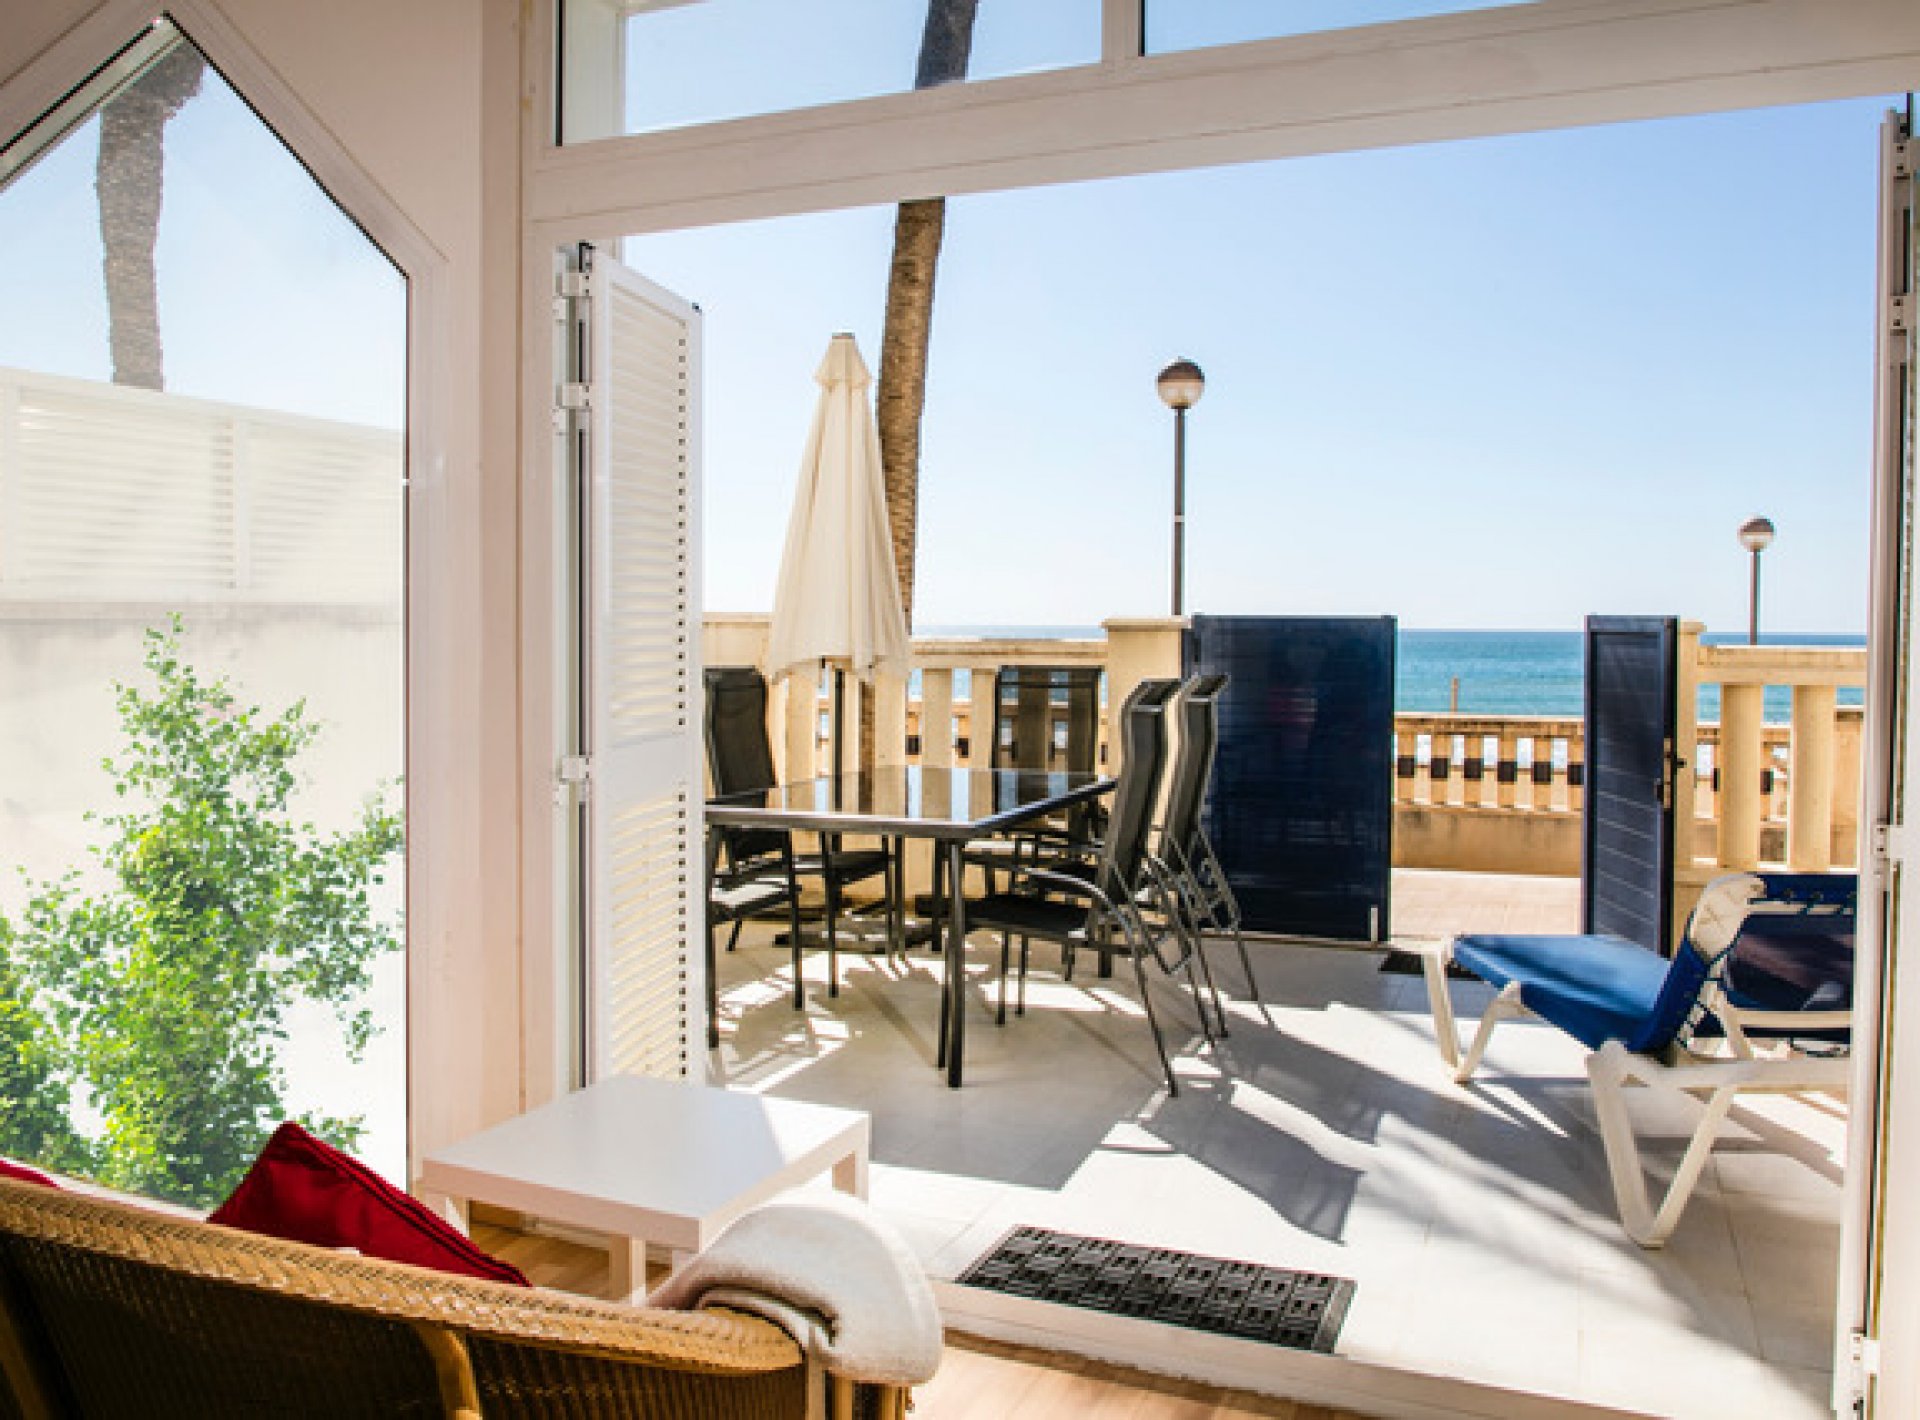 Apartamento Marina Sun con hermosa terraza a primera línea de playa con vistas al mar, piscina y pista de tenis -Pet Friendly by GLOBALSITGES